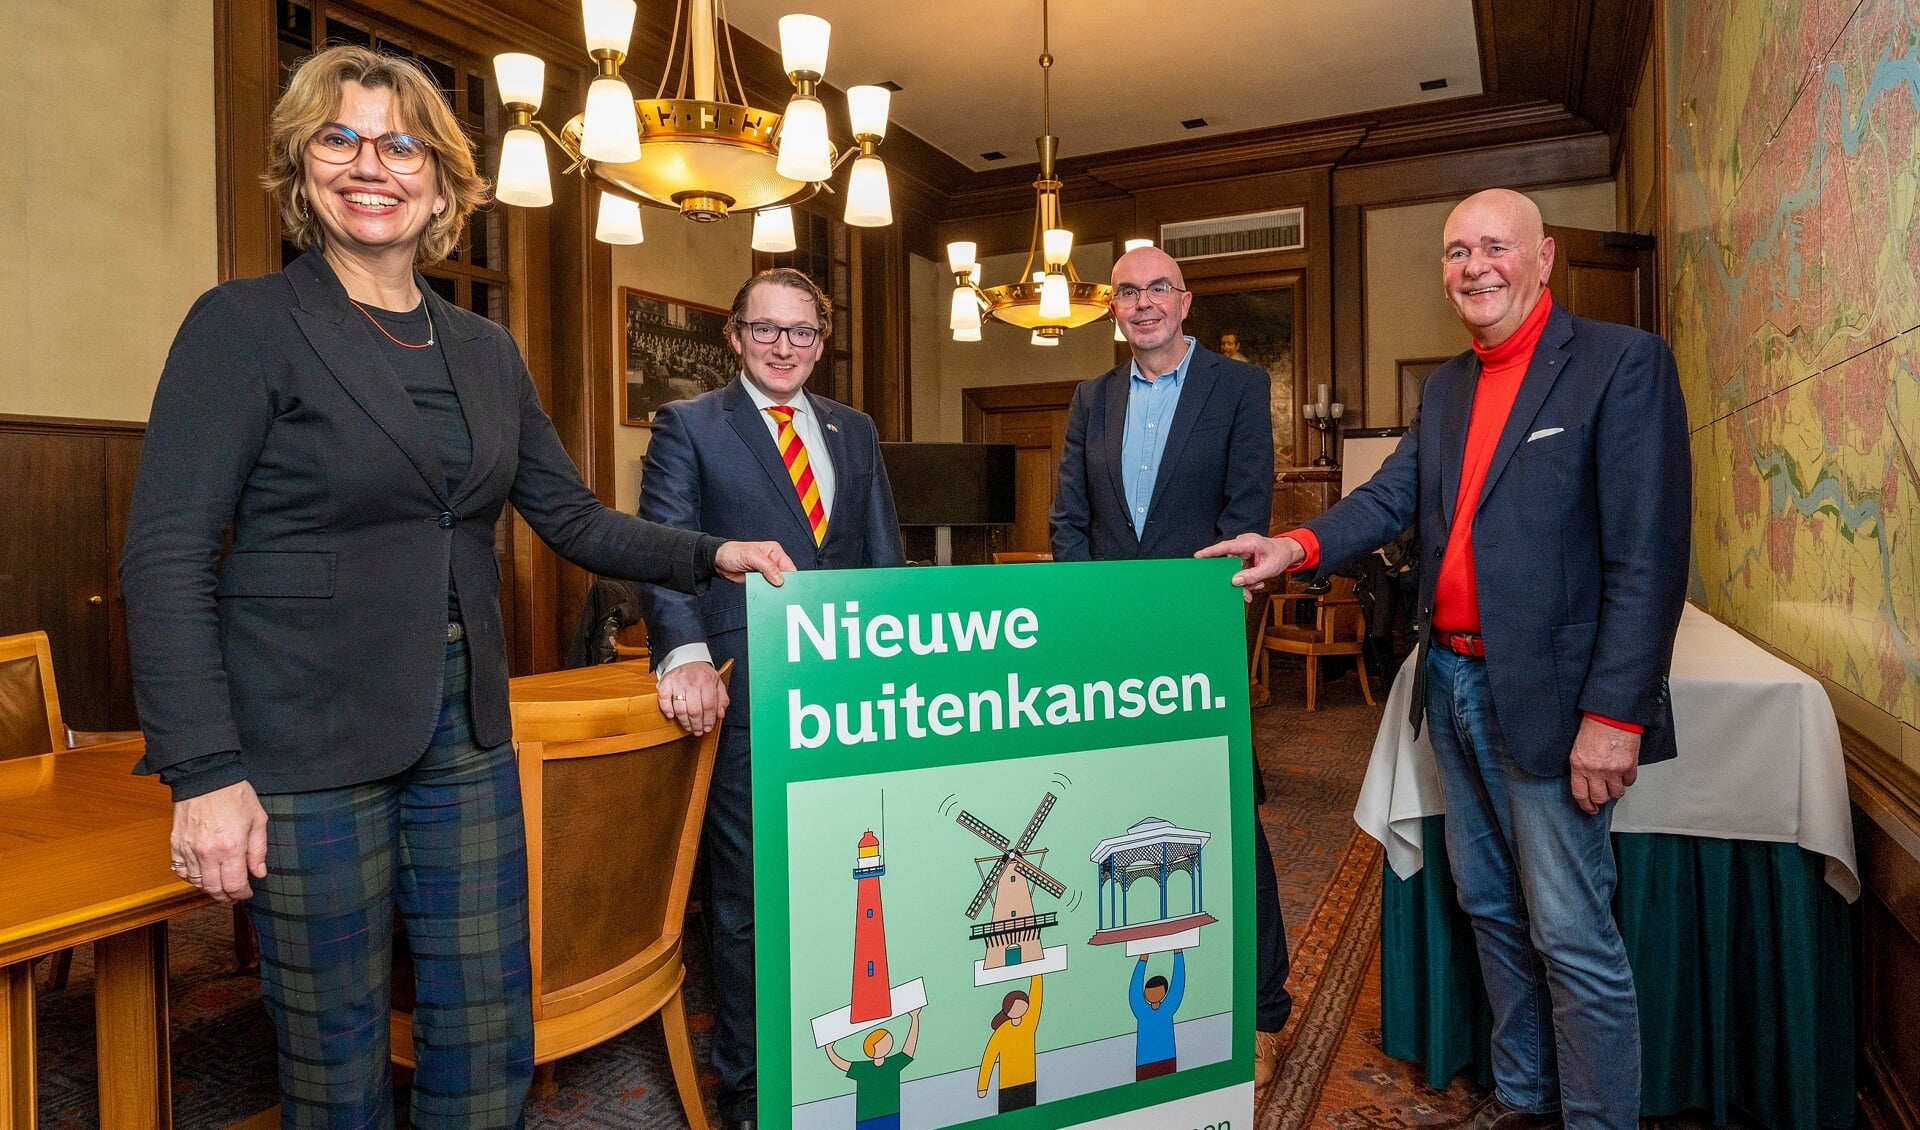 Gebiedsvoorzitters Rob Oosterlee (Rozenburg), Rob van der Meer (Pernis) en Peter Stok (Hoek van Holland) overhandigen het ambitiedocument ‘Nieuwe buitenkansen’ aan wethouder Roos Vermeij. 